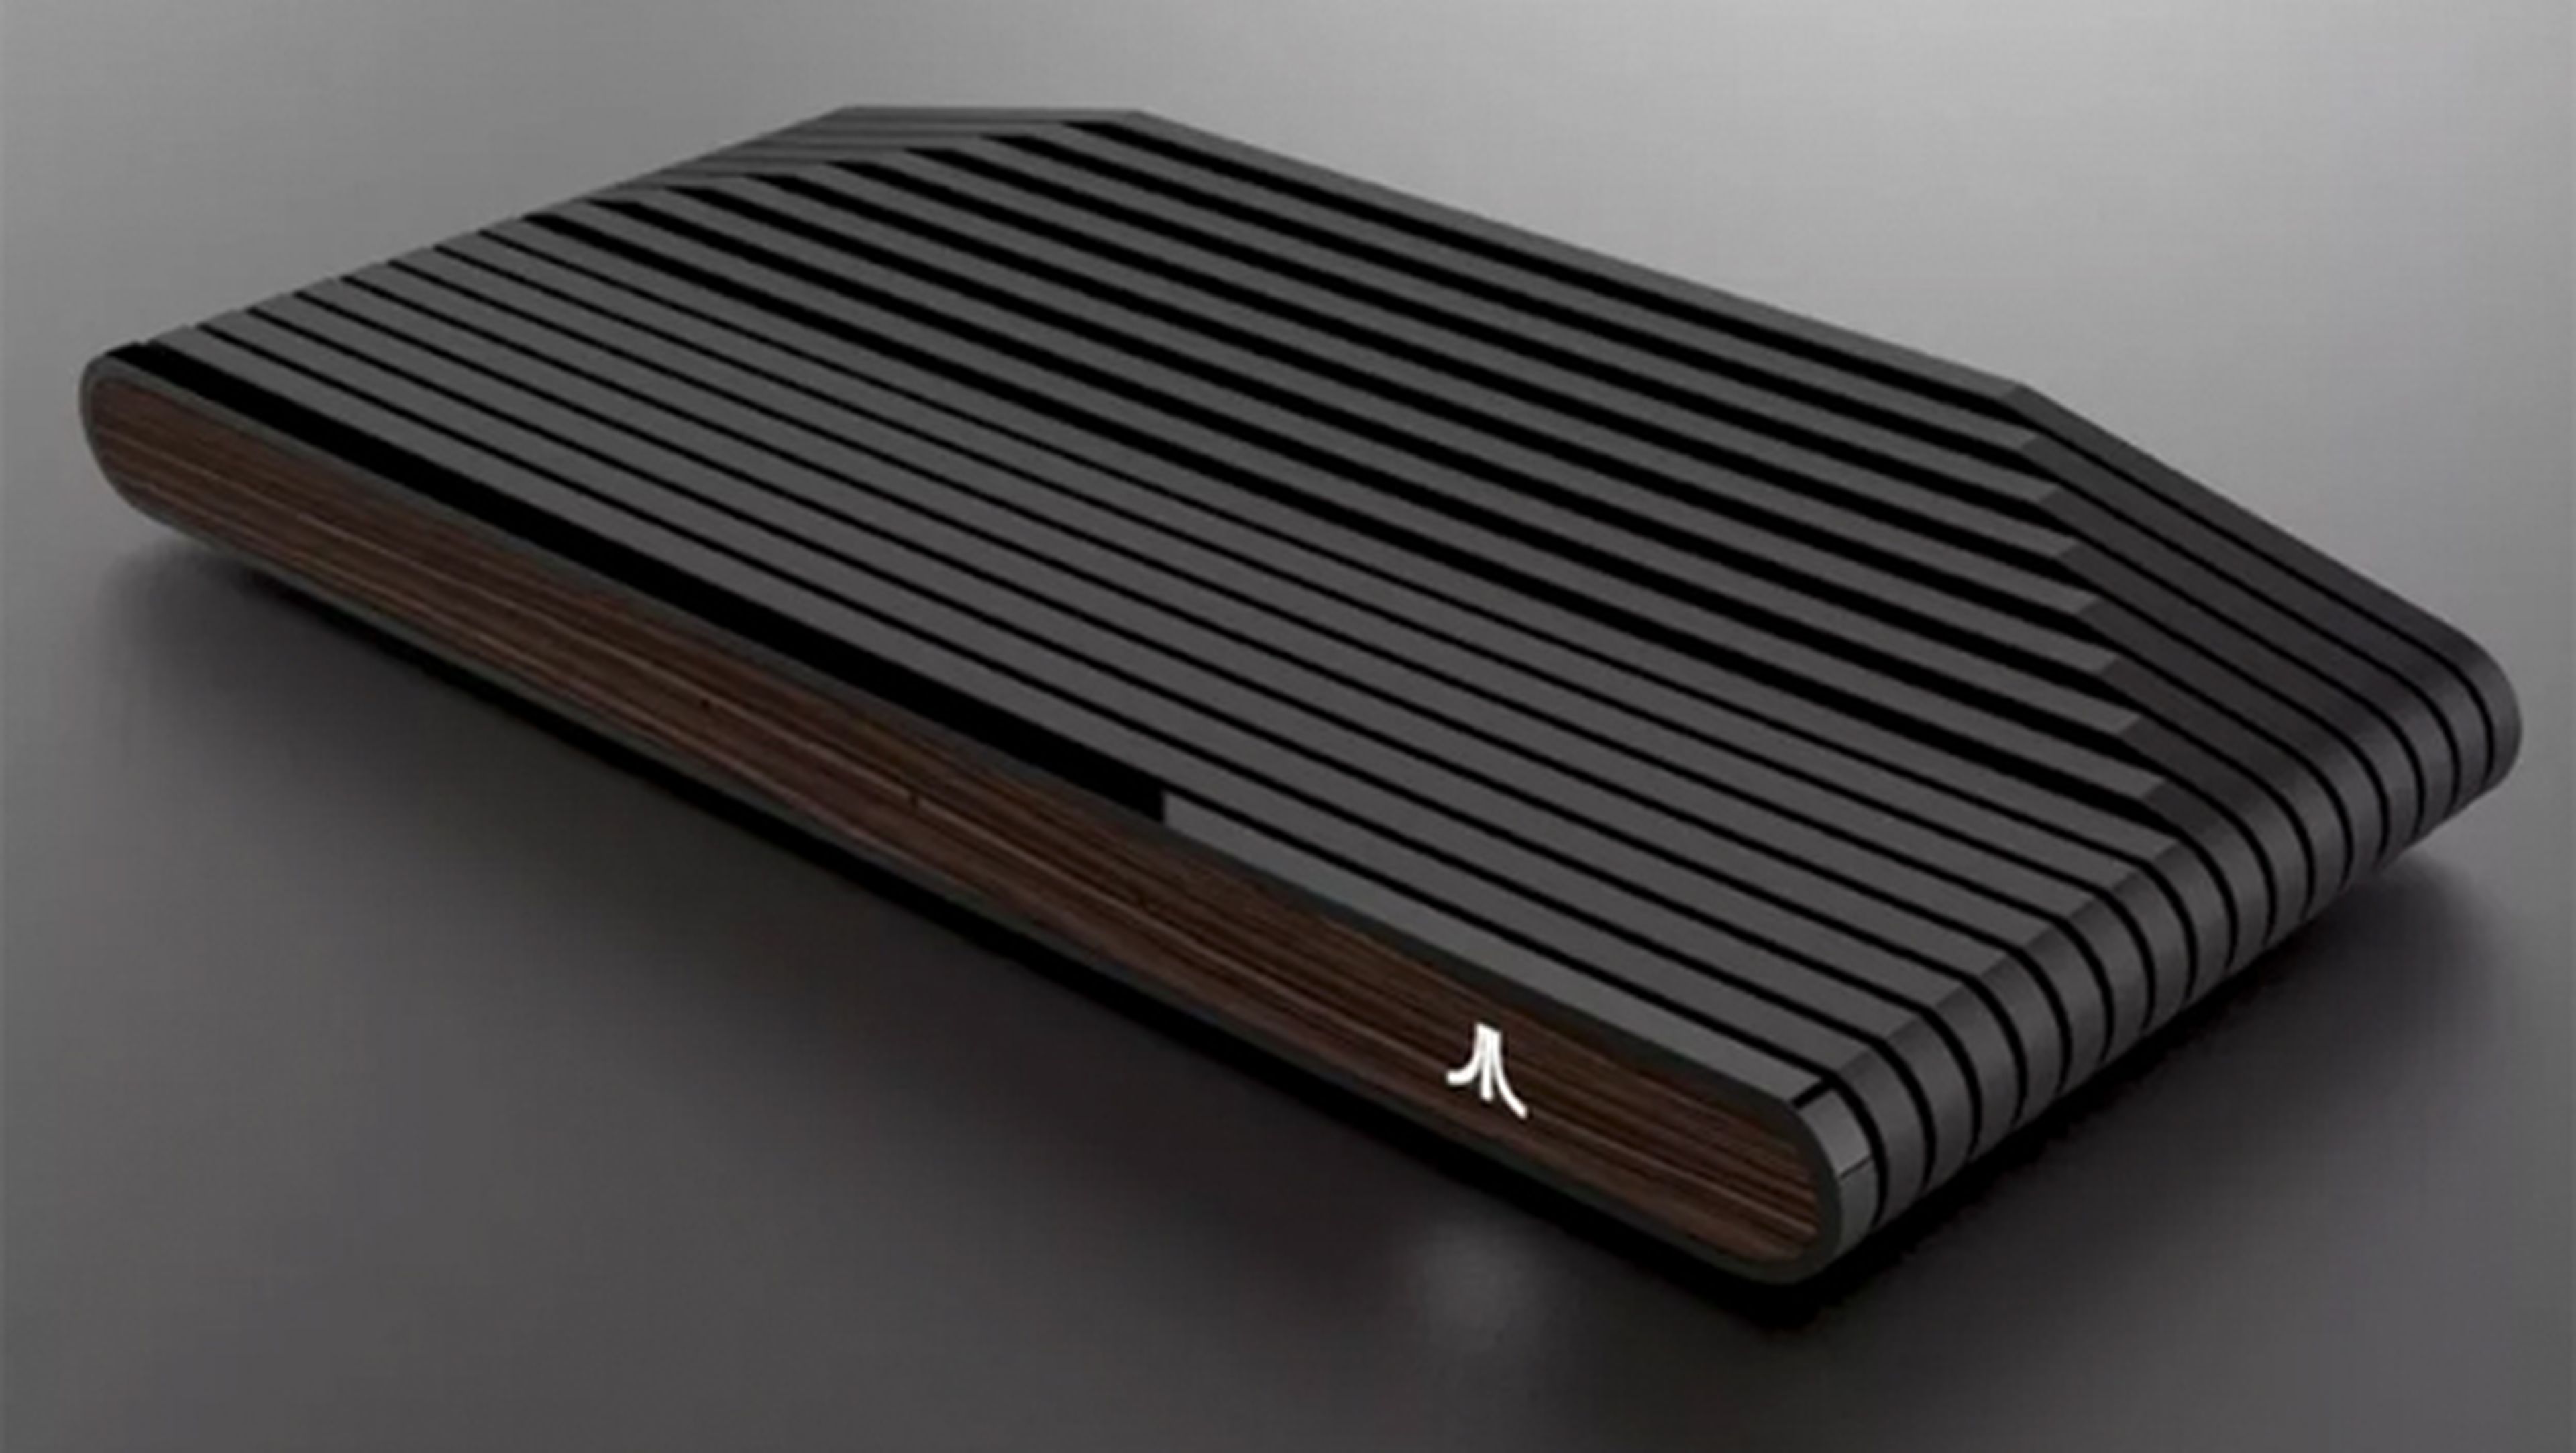 El diseño de la Ataribox ya está confirmado por Atari